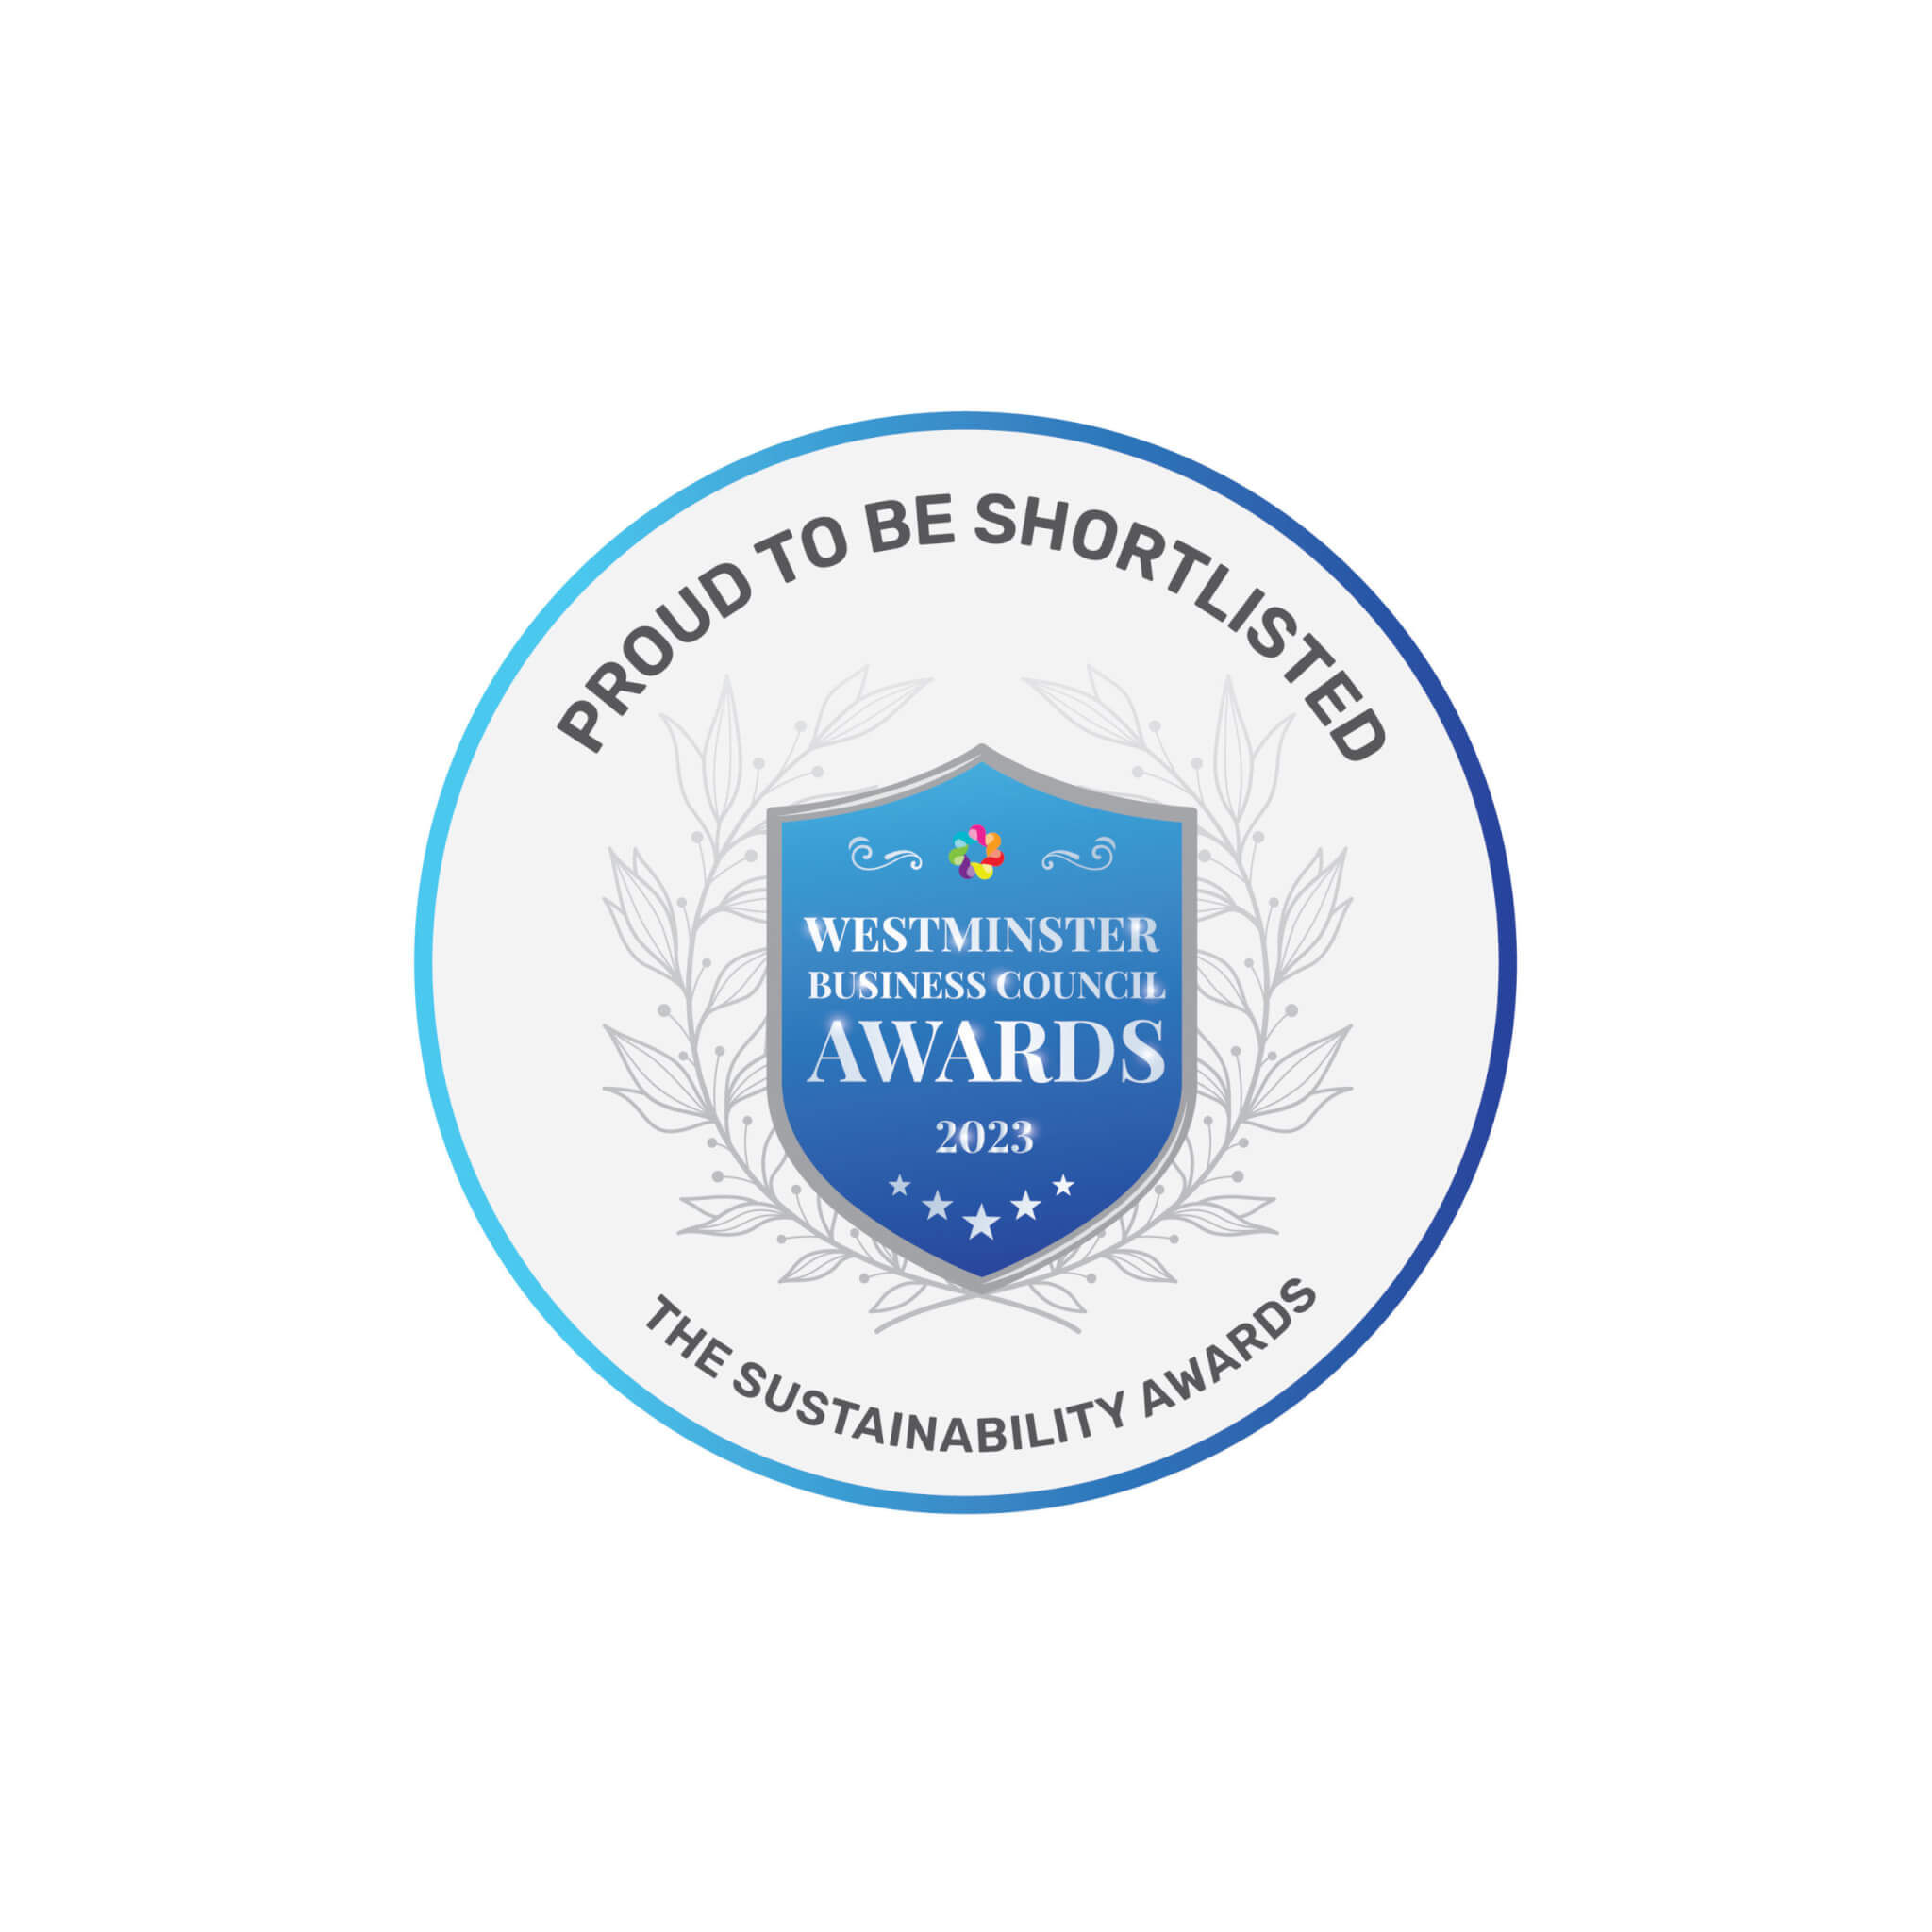 The Sustainability awards logo